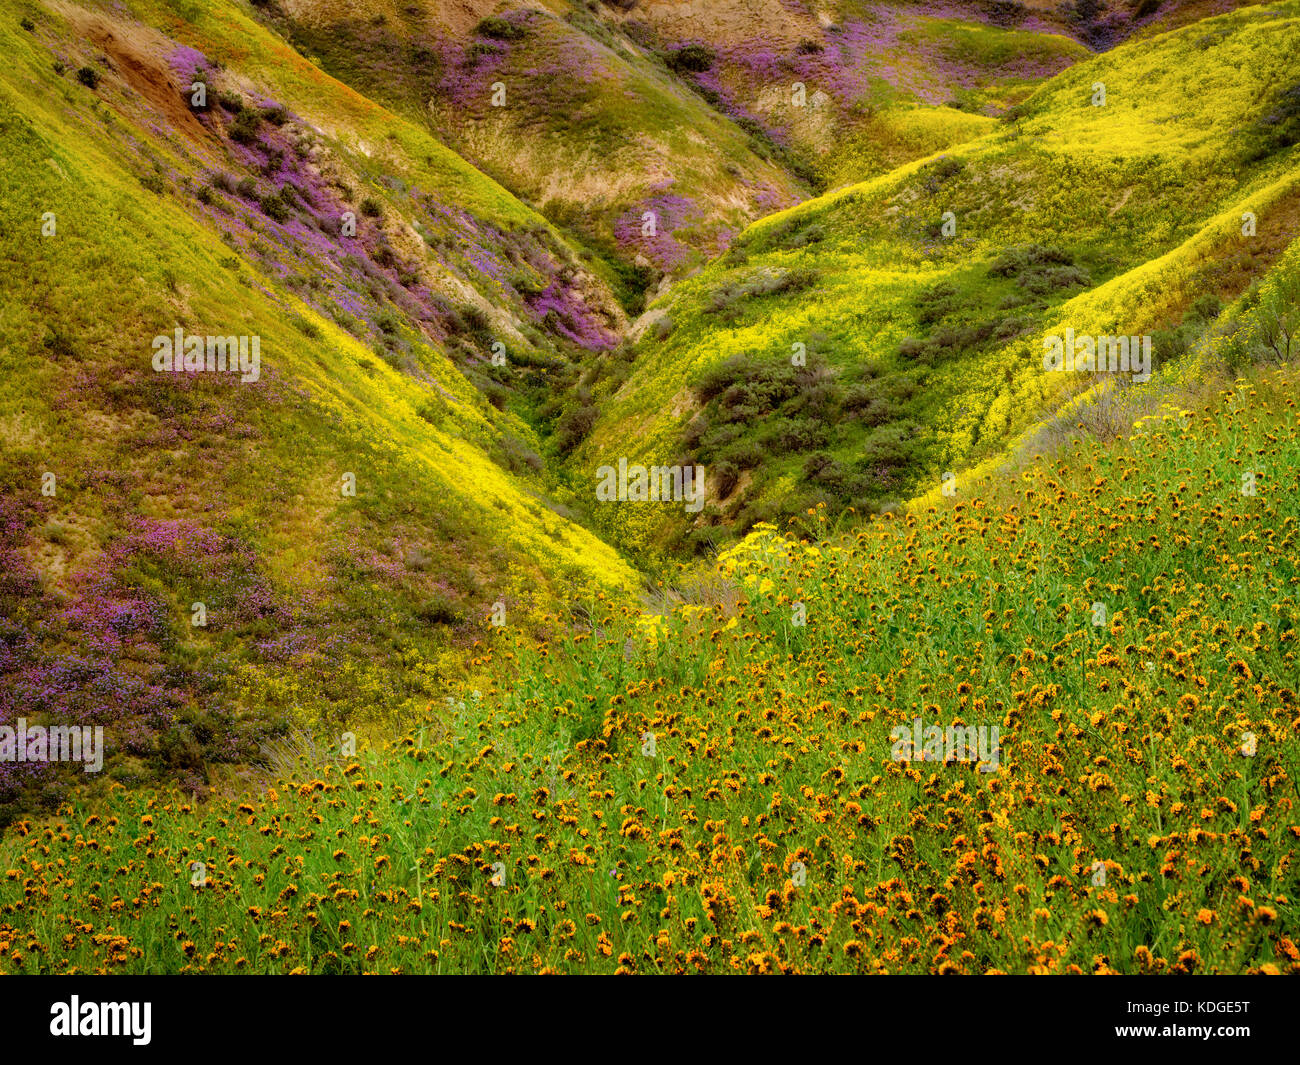 Avant-plan de la laitue ou du diable (fiddleneck amsinckia tessellata) avec des collines couvertes de fleurs. carrizo plain national monument (Californie) Banque D'Images